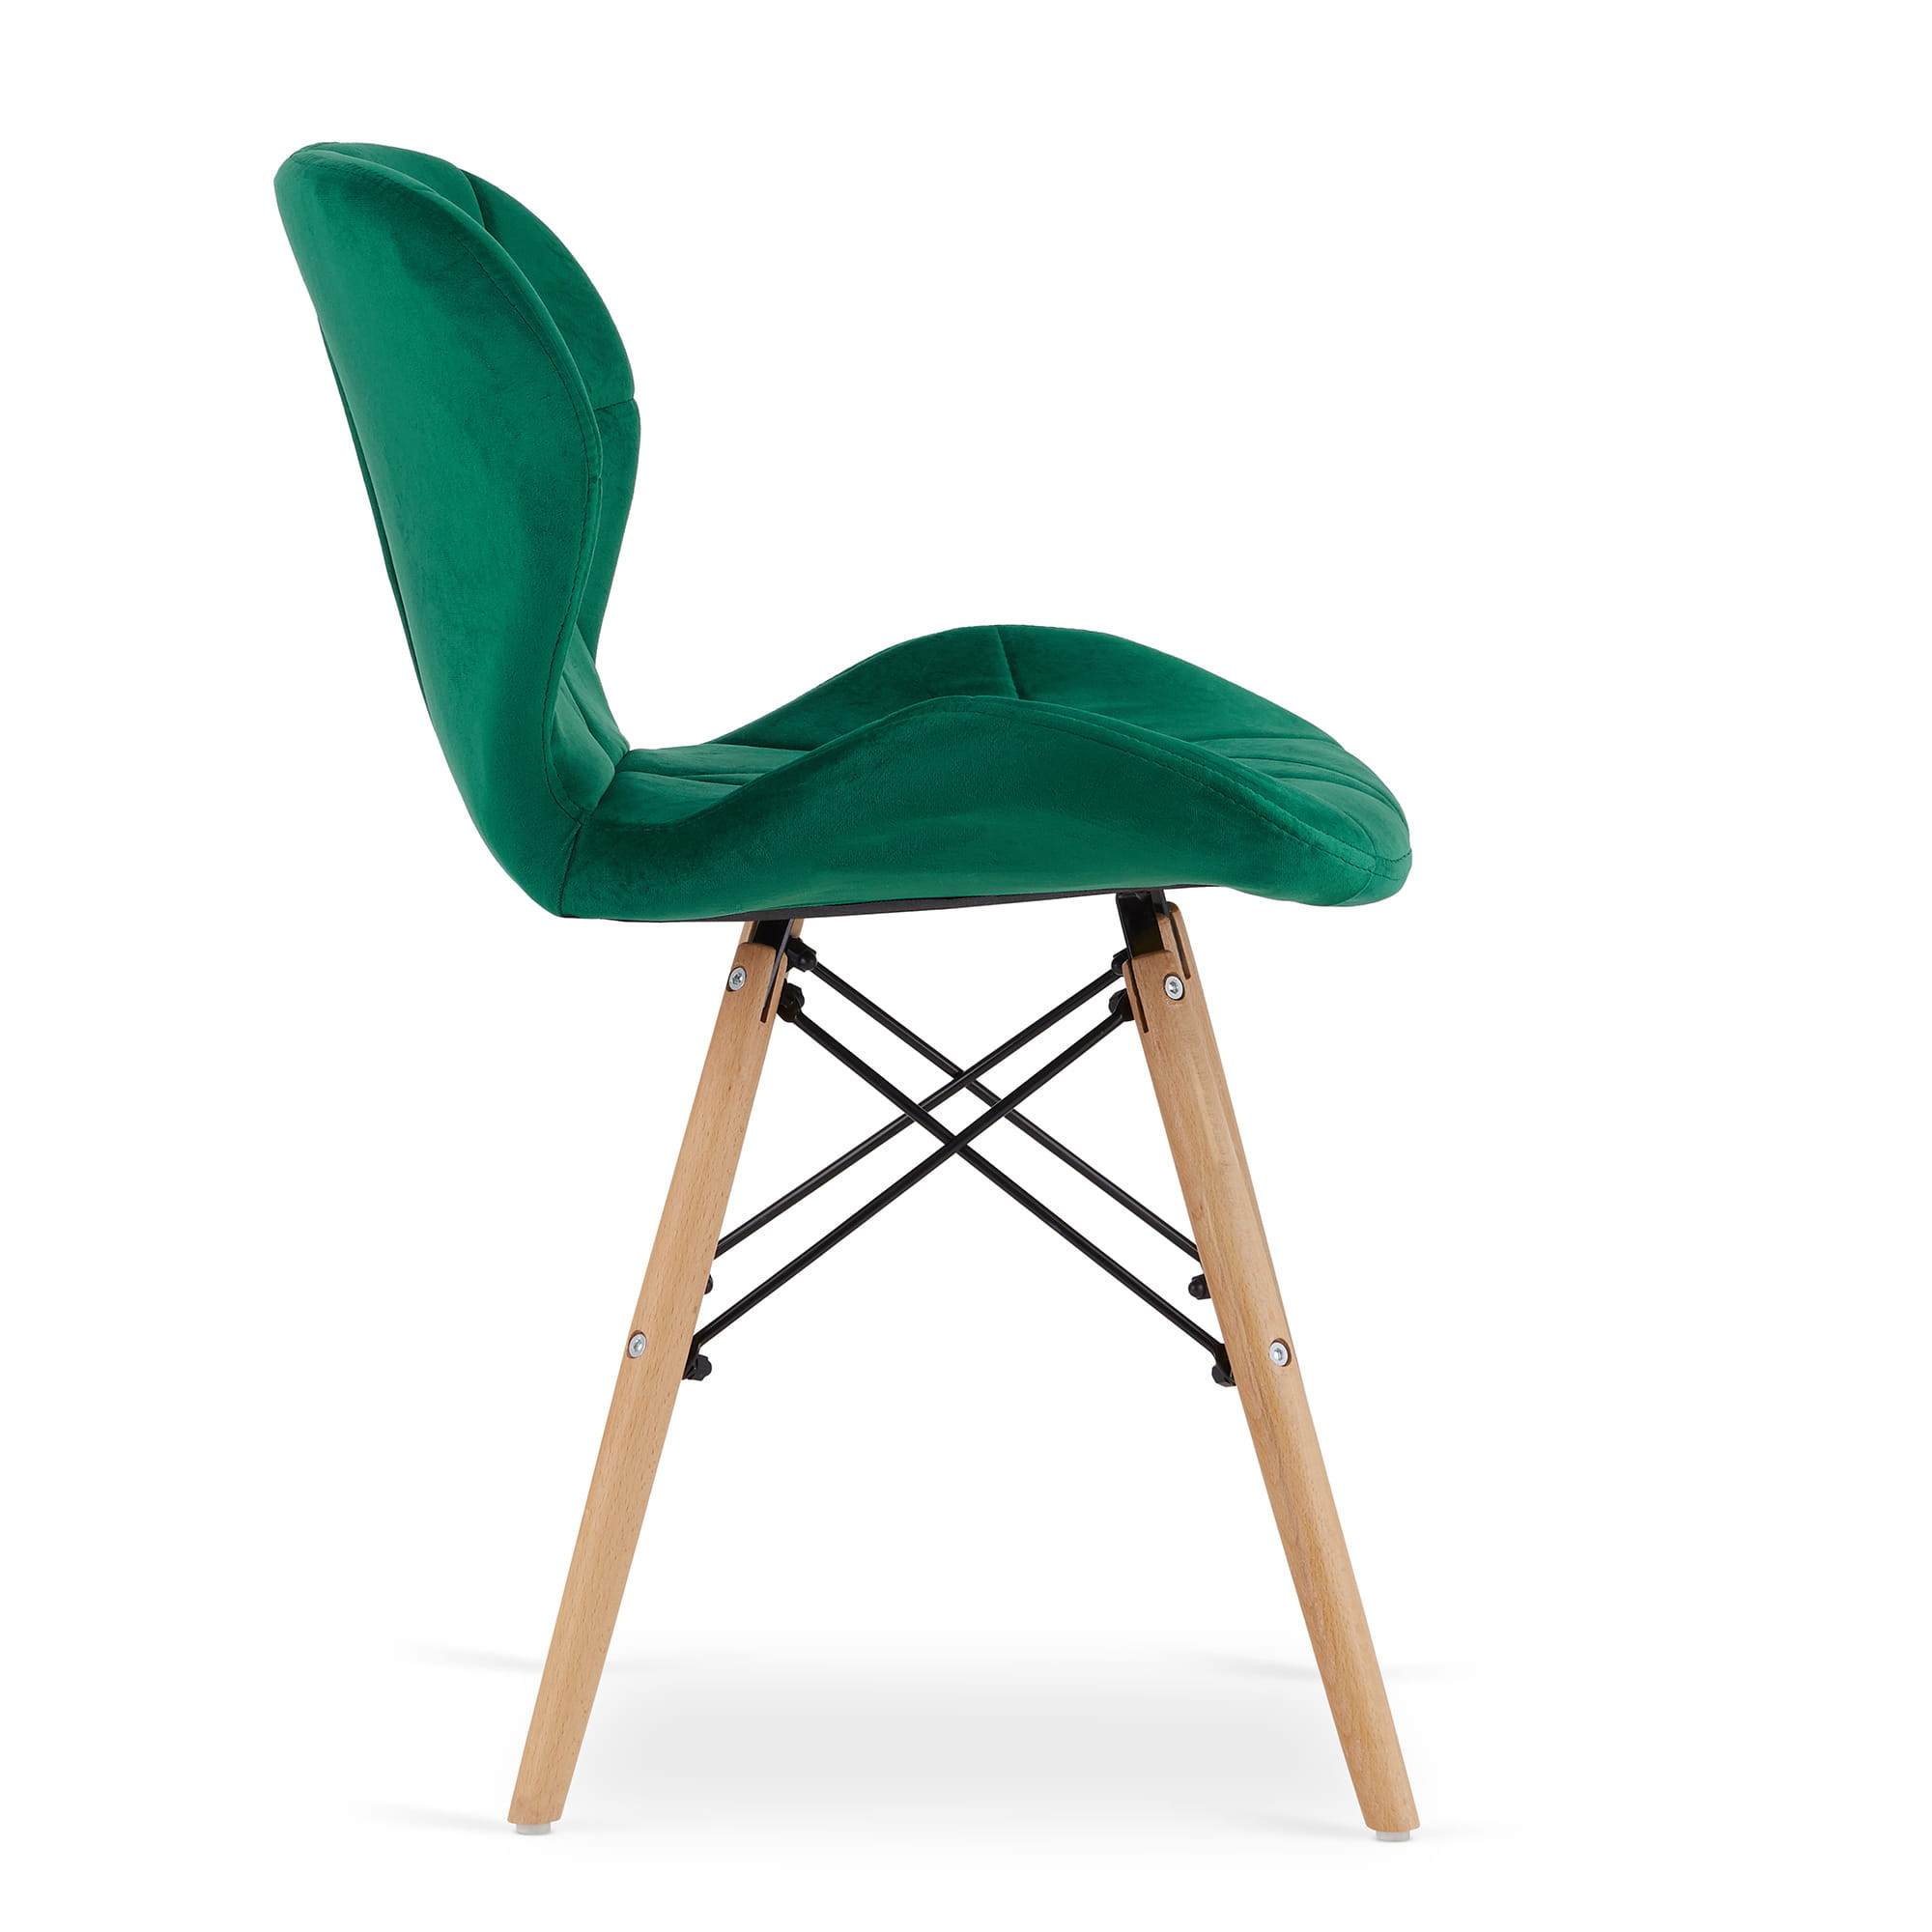 Jídelní židle LAGO zelená (hnědé nohy)